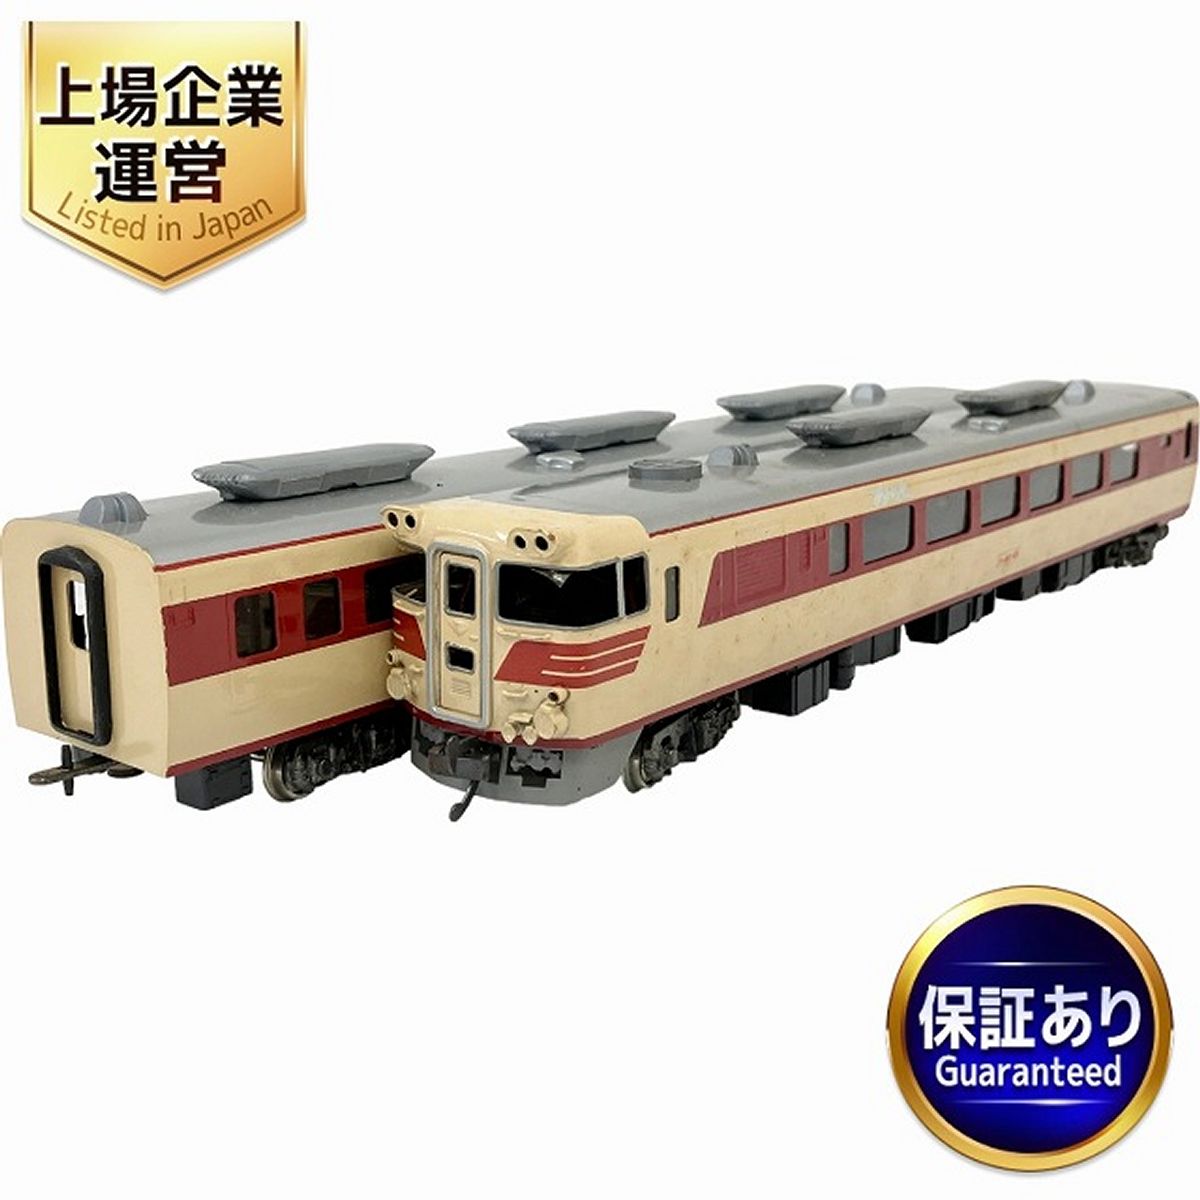 KATSUMI キハ-80 完成品/キハ-82 HOゲージ 2点おまとめ 鉄道模型 カツミ 中古 O9002189